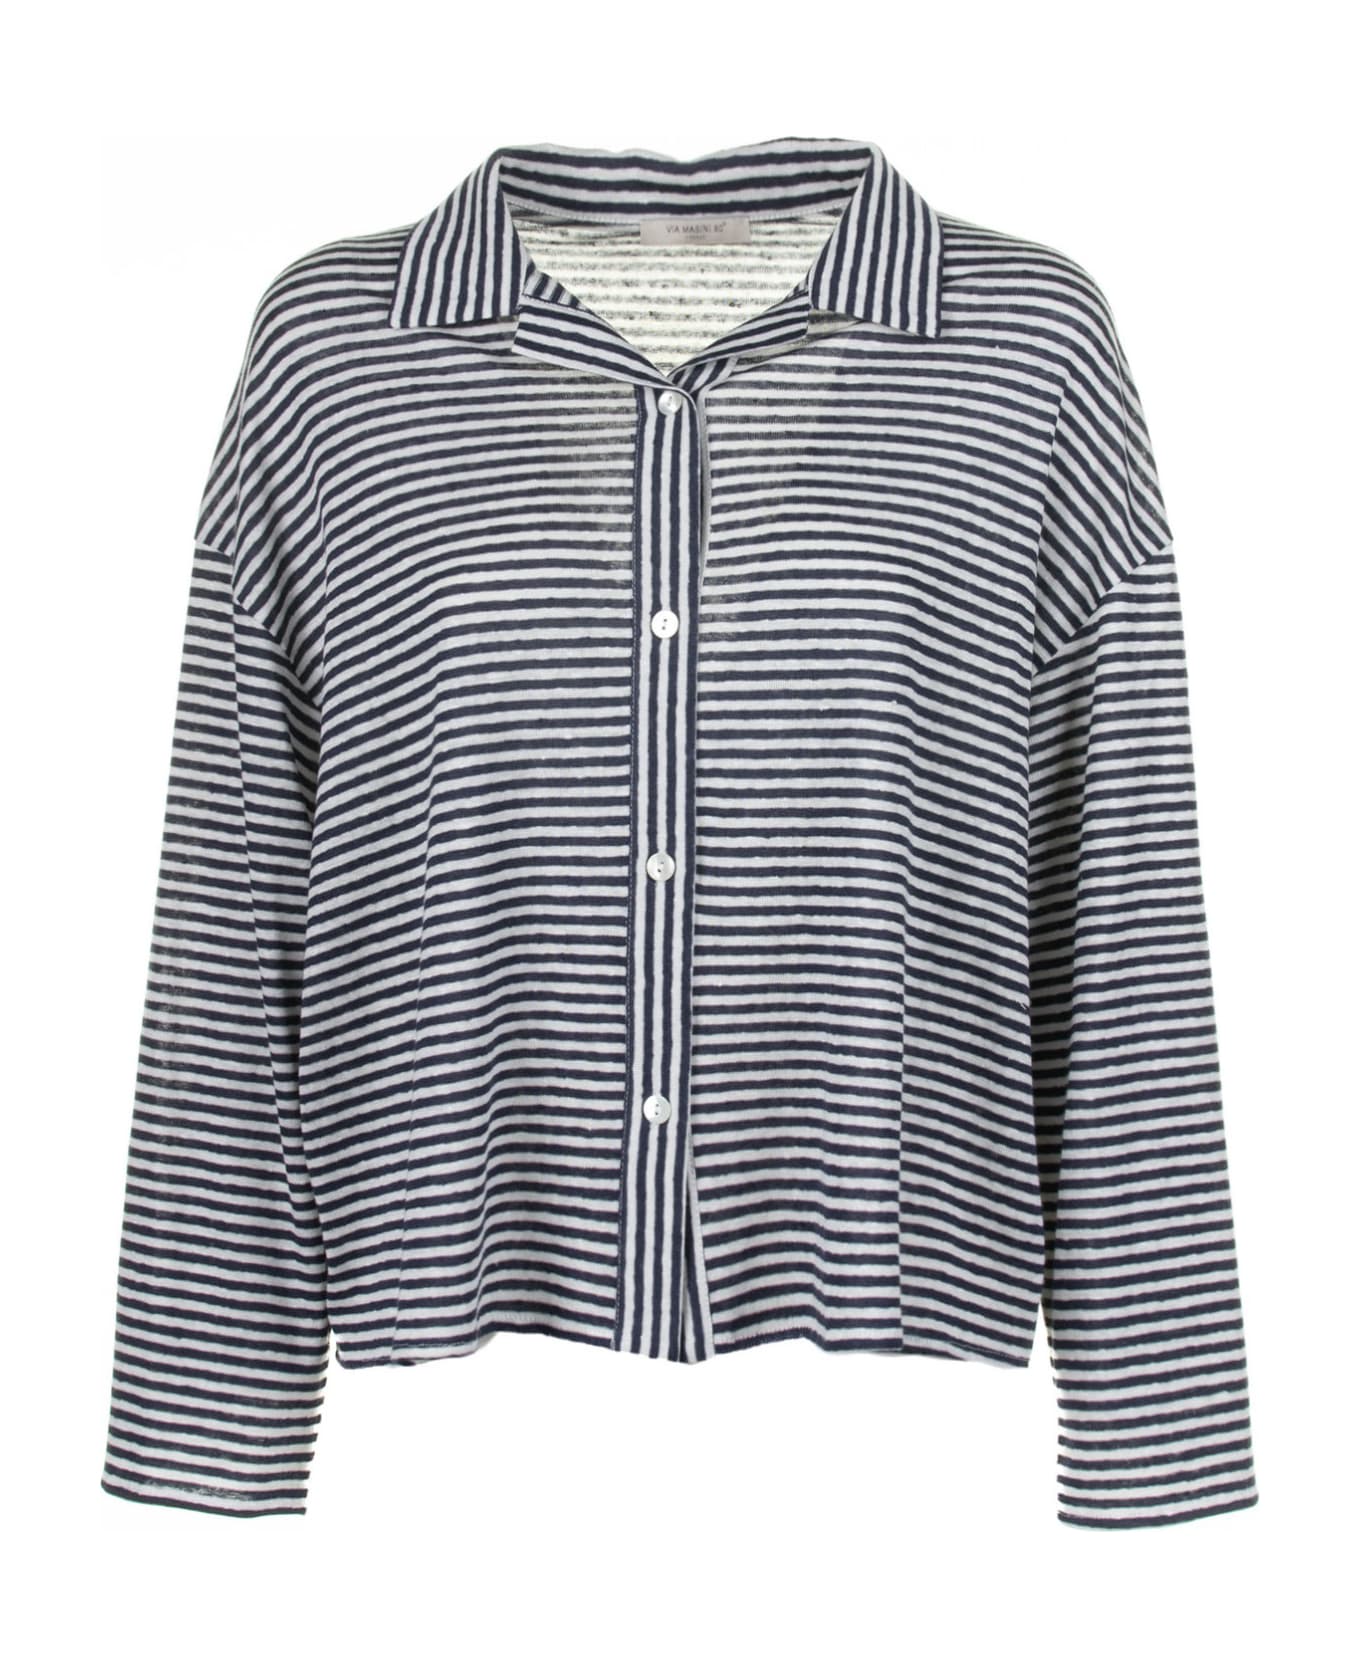 Via Masini 80 Blue And White Striped Shirt - BIANCO/BLU シャツ